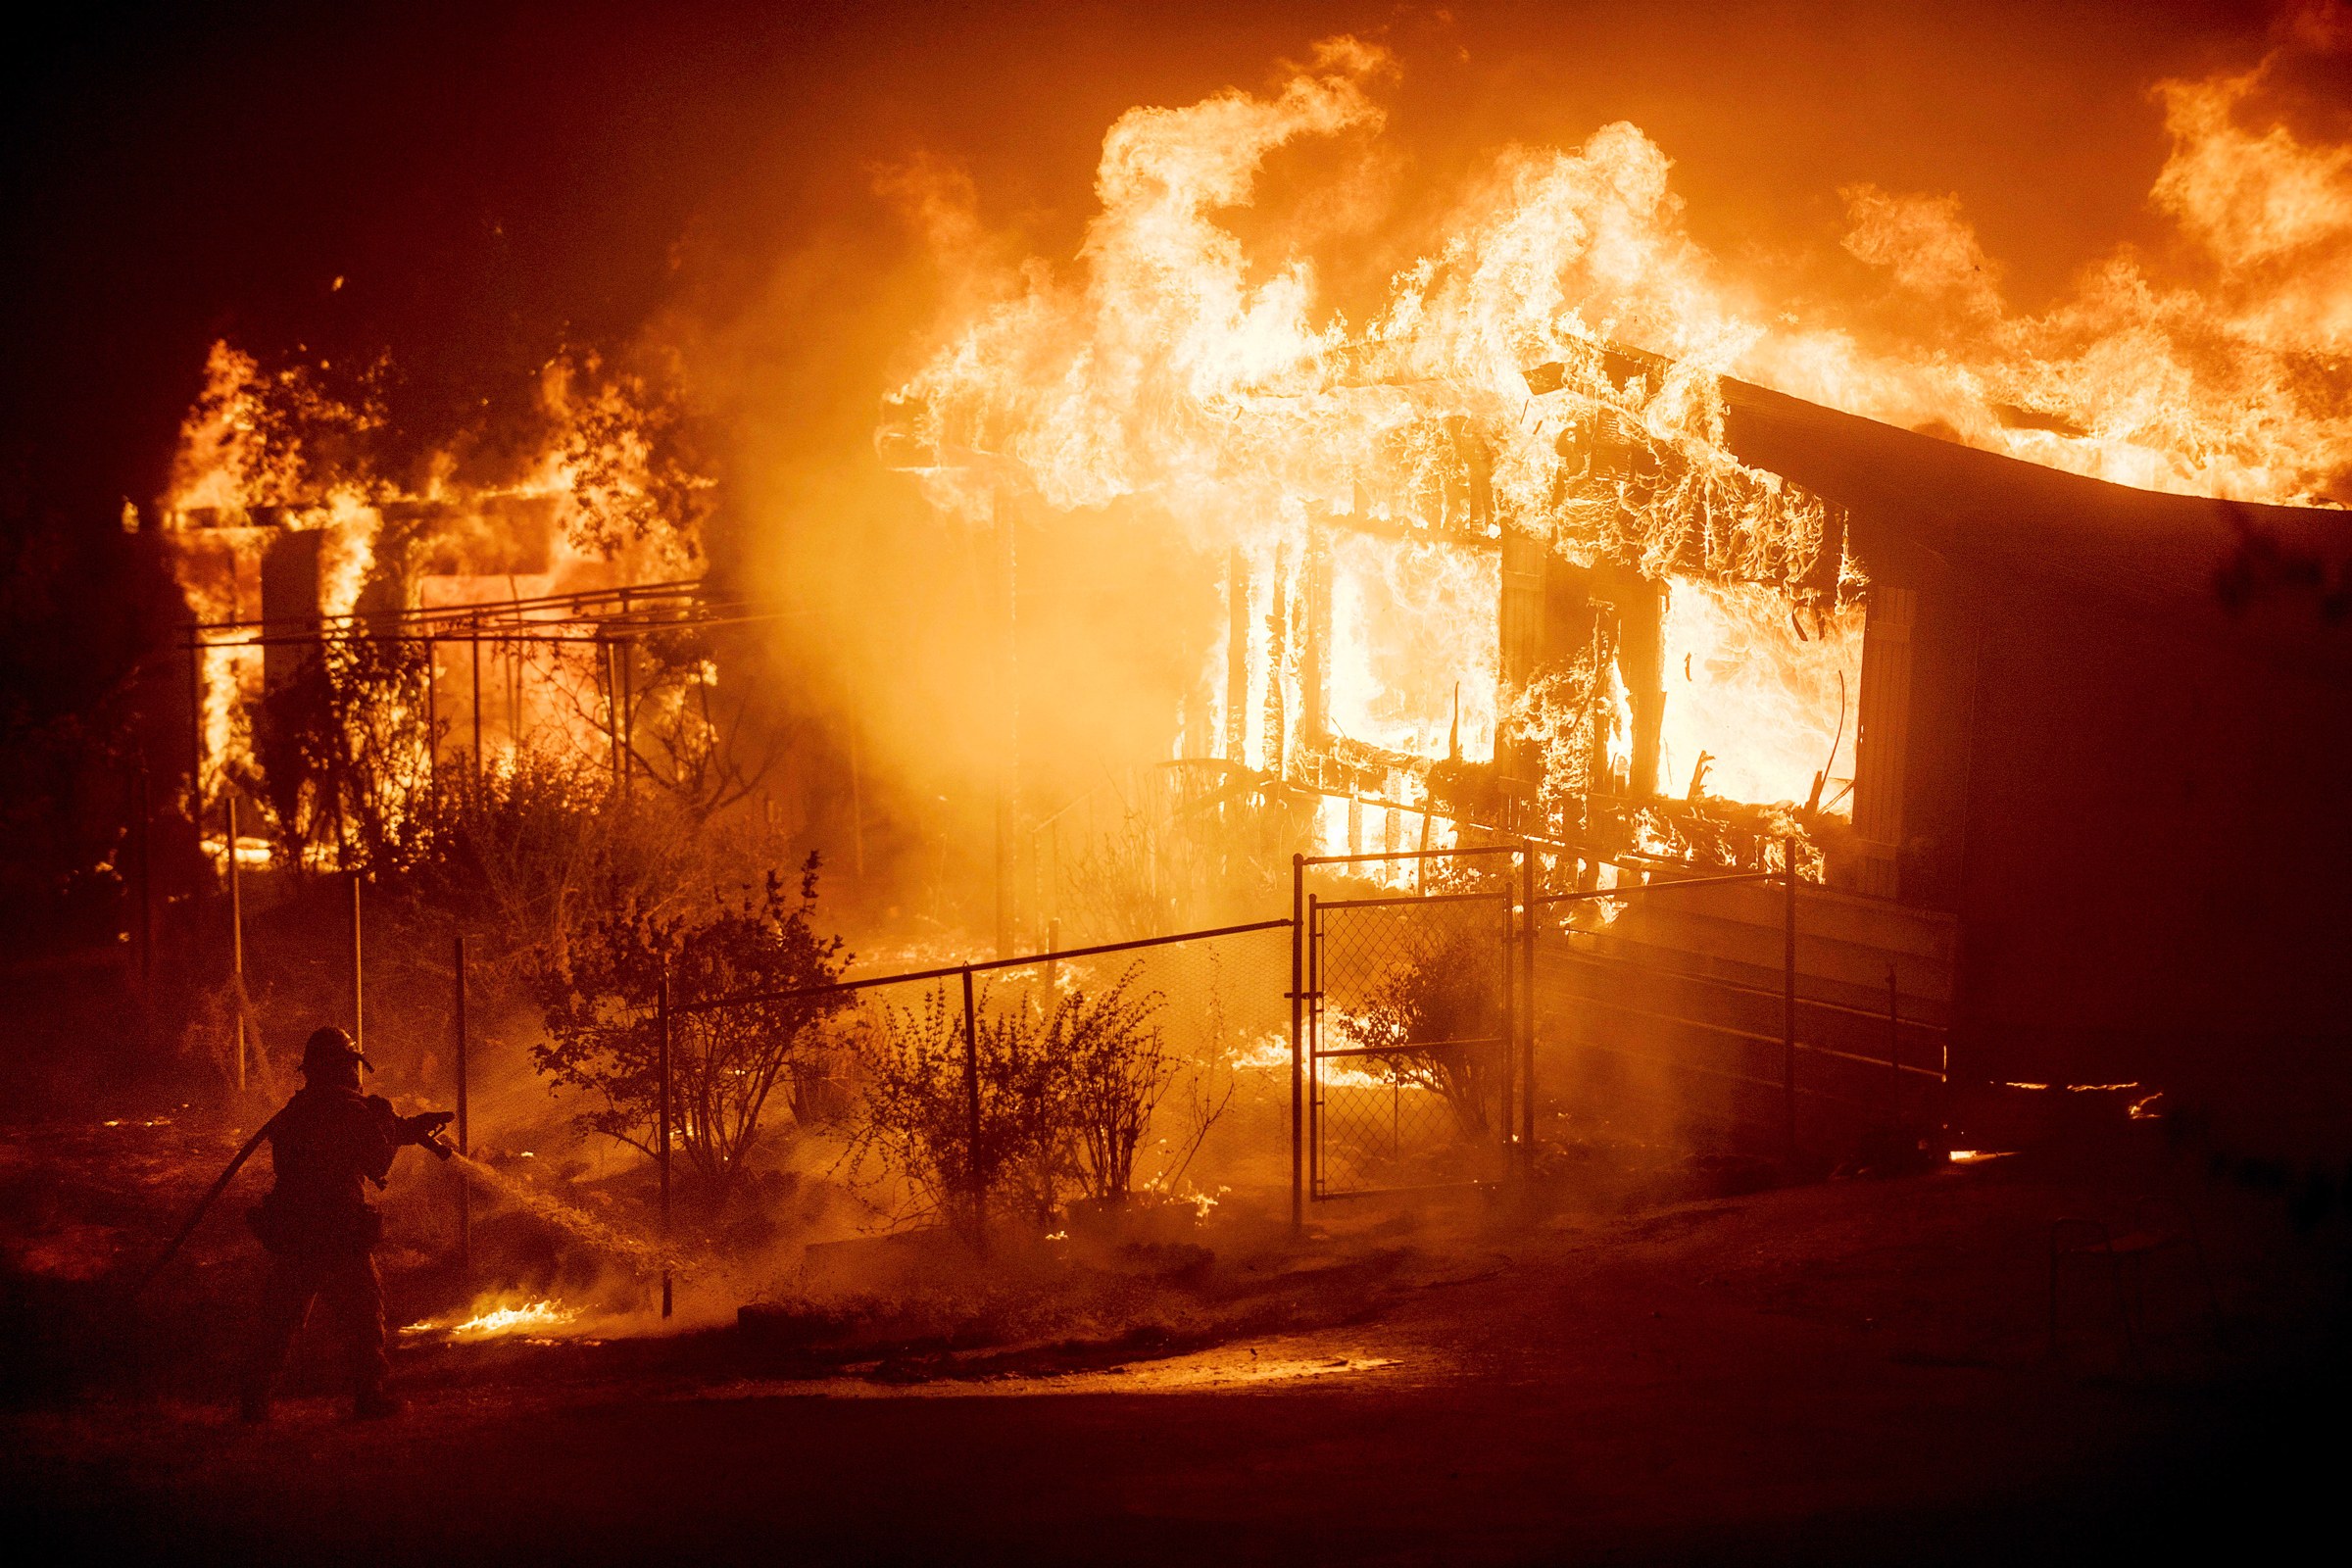 ΕΠΑΡΧΙΑ ΠΑΦΟΥ: Στις φλόγες παραδόθηκε η οικία 53χρονου επιχειρηματία - Άγνωστοι το έλουσαν με εύφλεκτη ύλη και το πυρπόλησαν